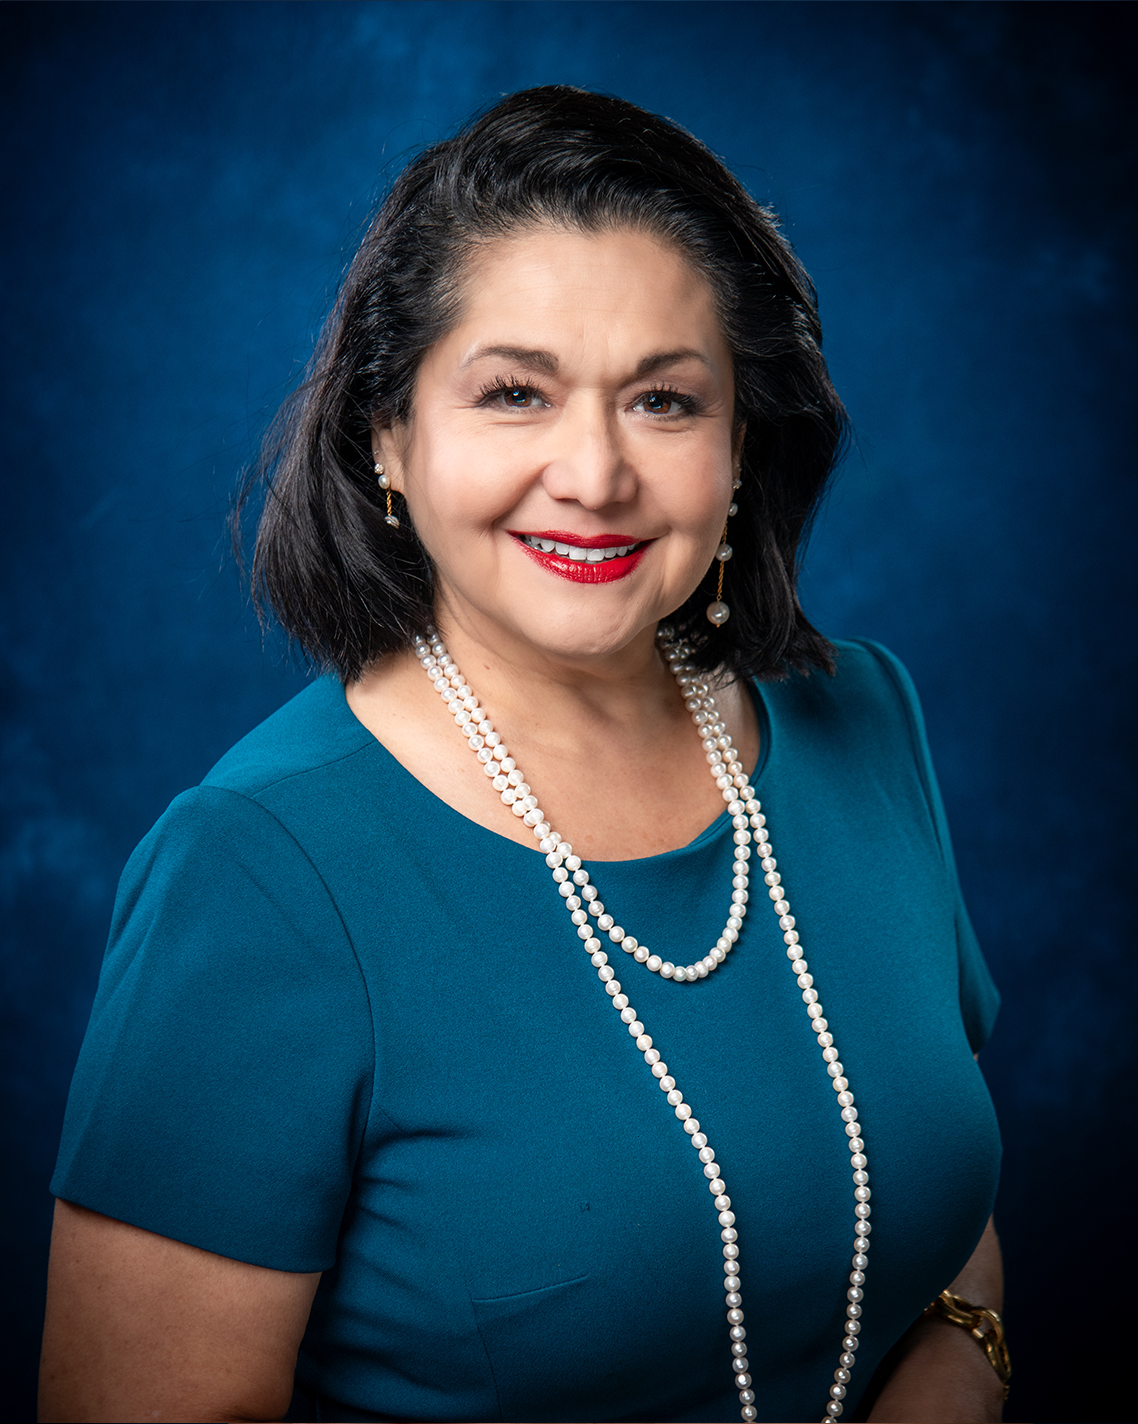 Photo of Houston ISD Board Member Paula Mendoza.